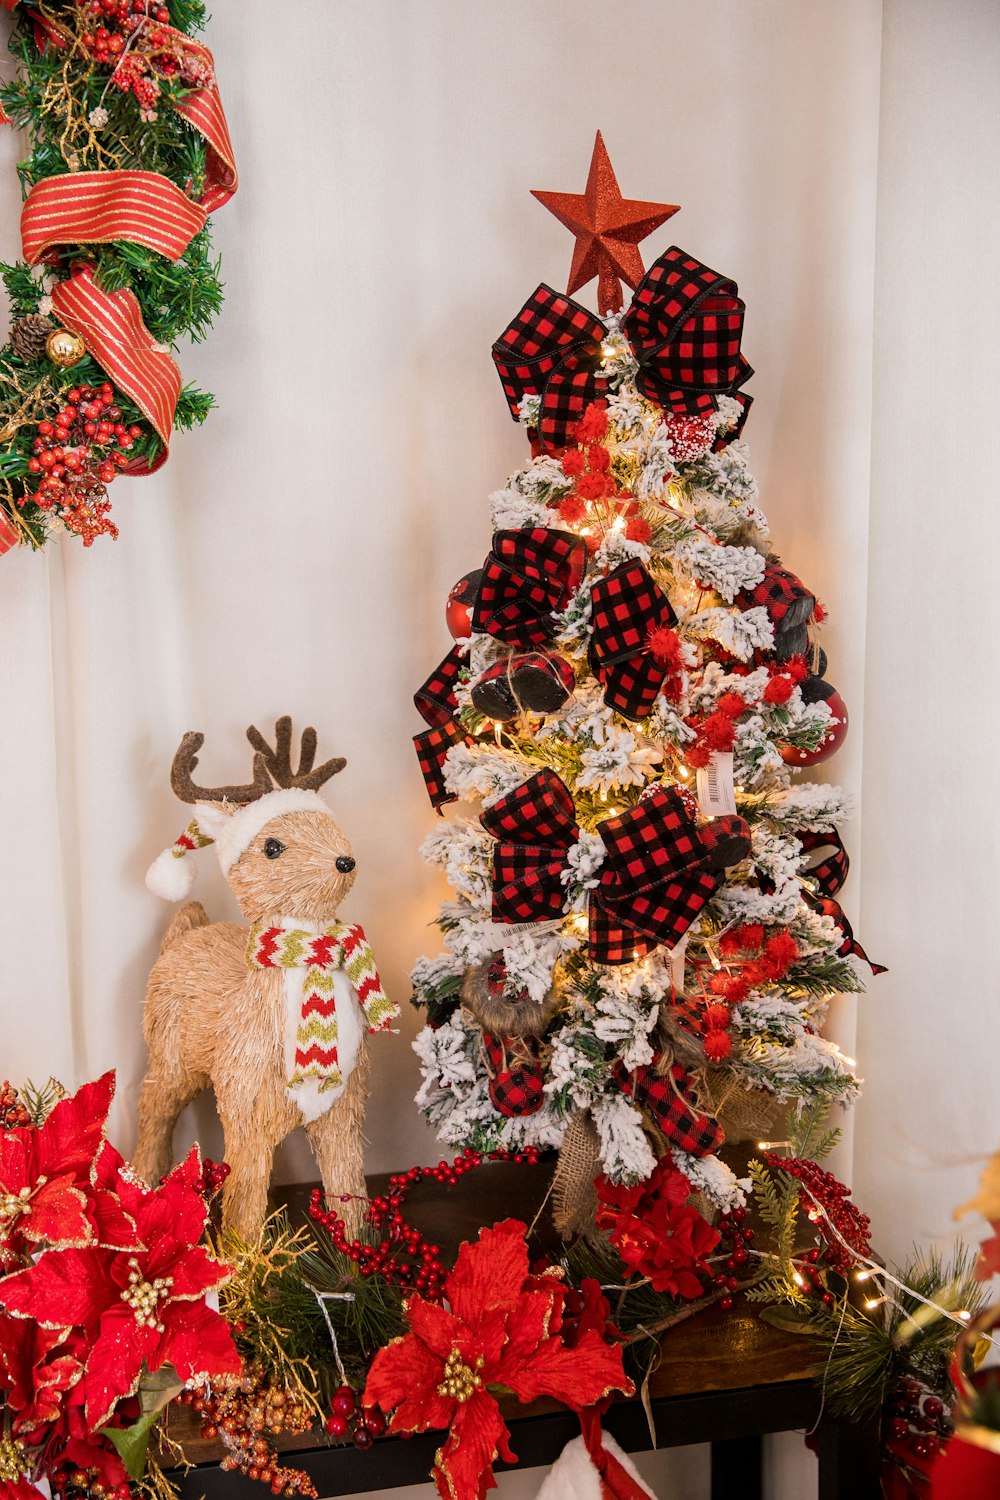 빨간색과 흰색 포인세티로 장식된 크리스마스 트리